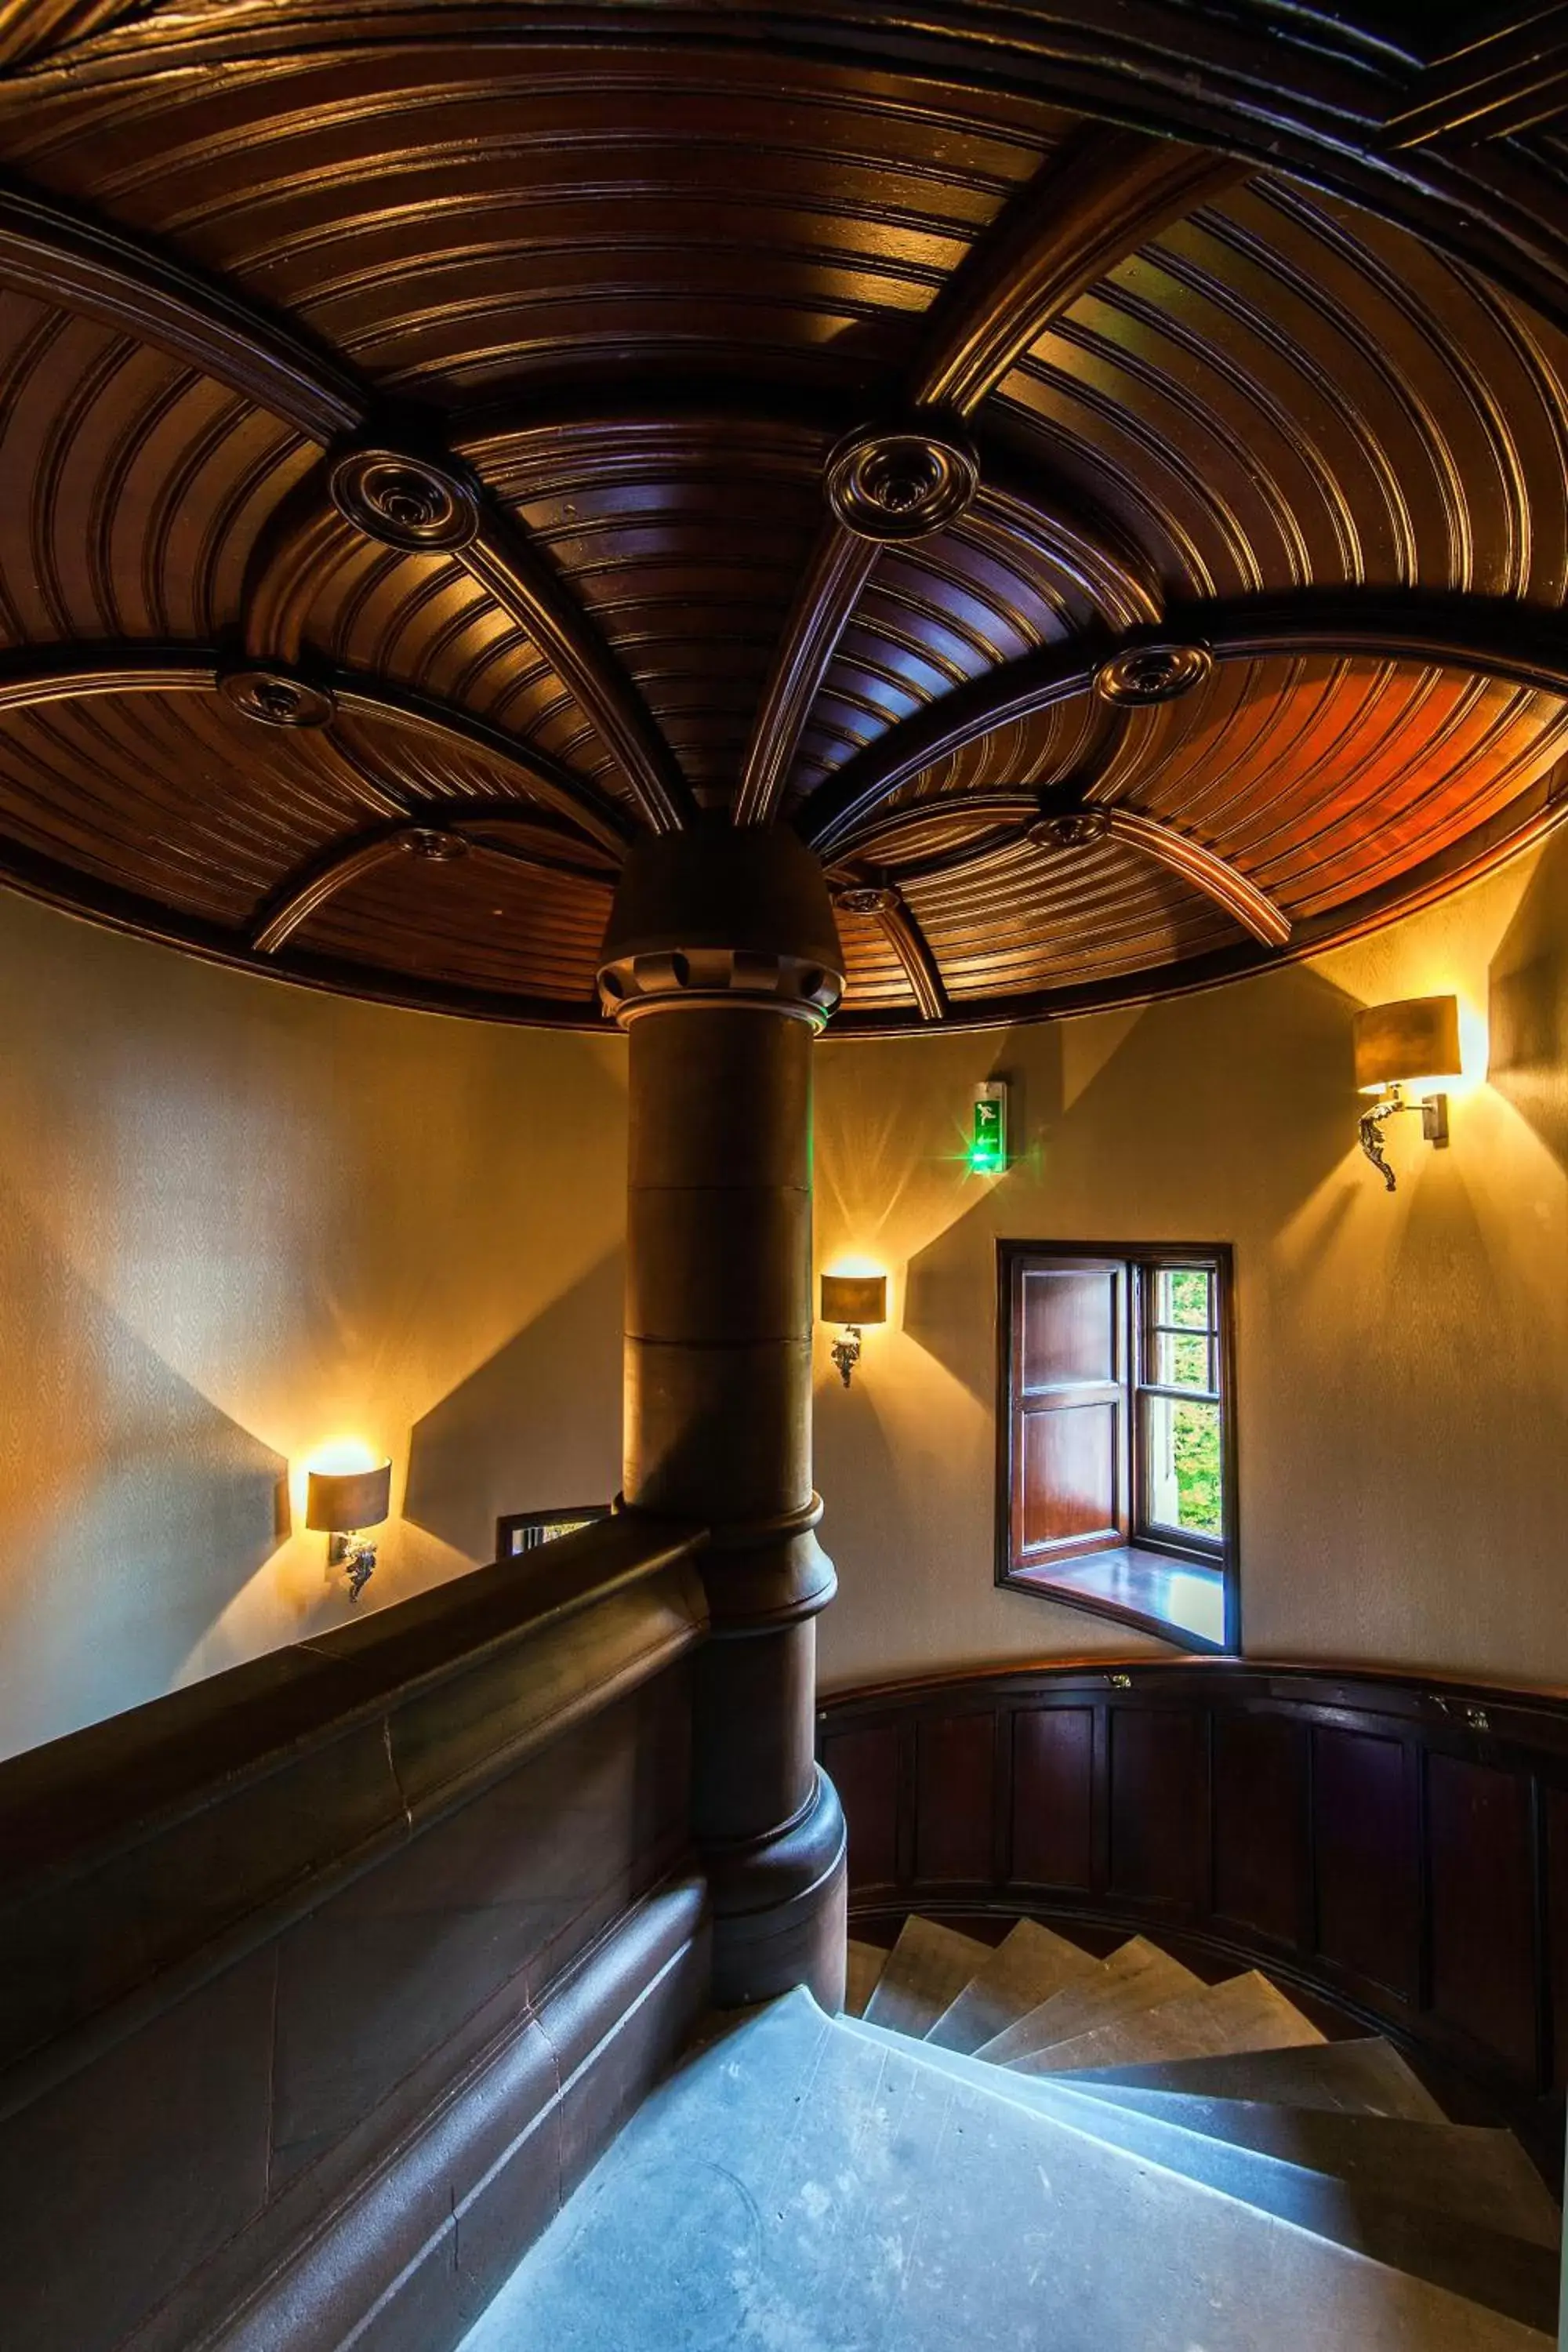 Lobby or reception in Fonab Castle Hotel